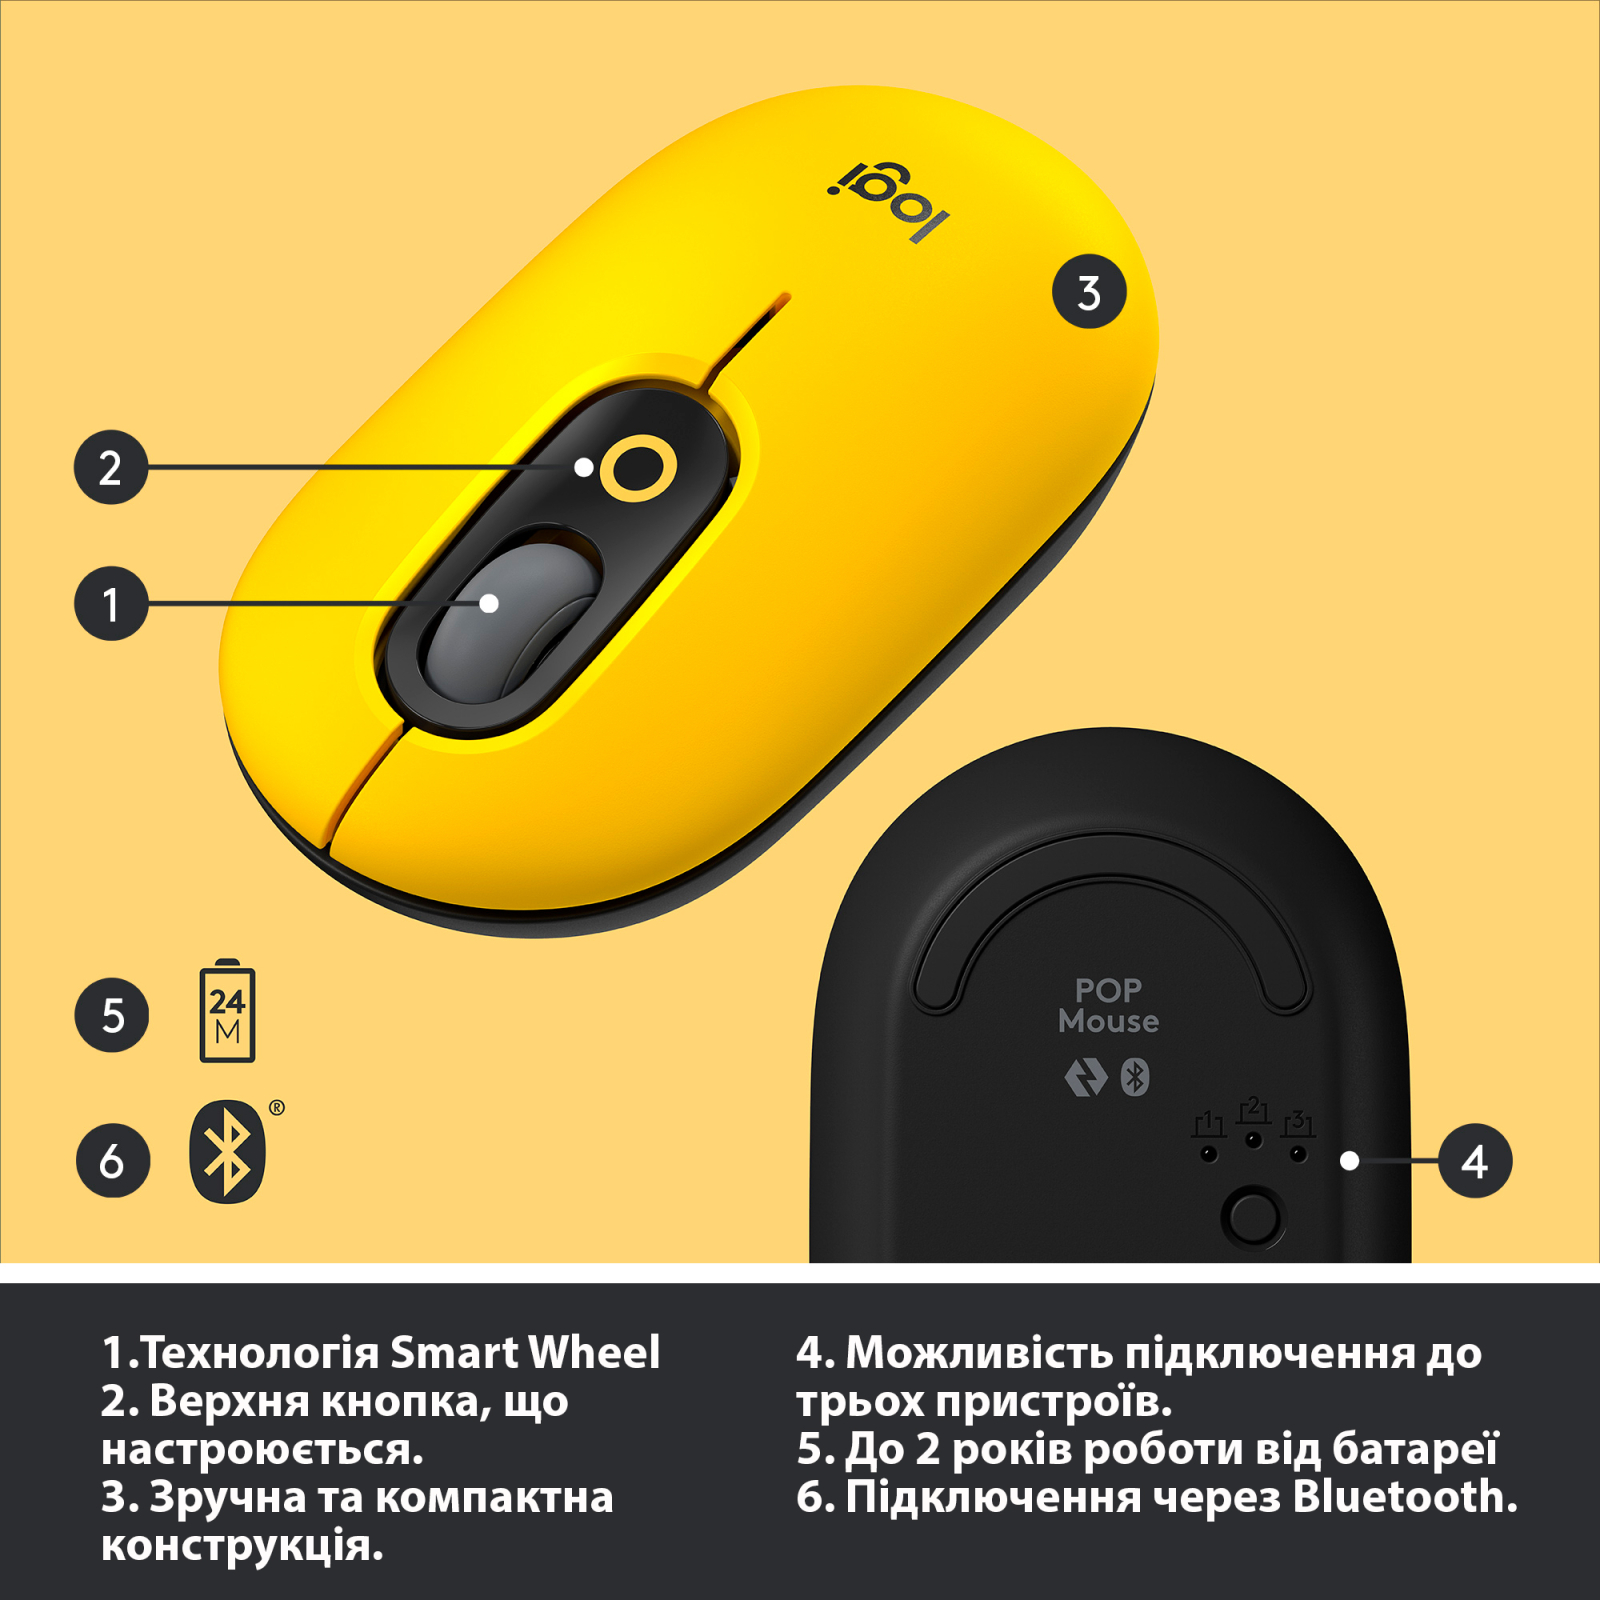 Мышка Logitech POP Mouse Bluetooth Blast Yellow (910-006546) изображение 6